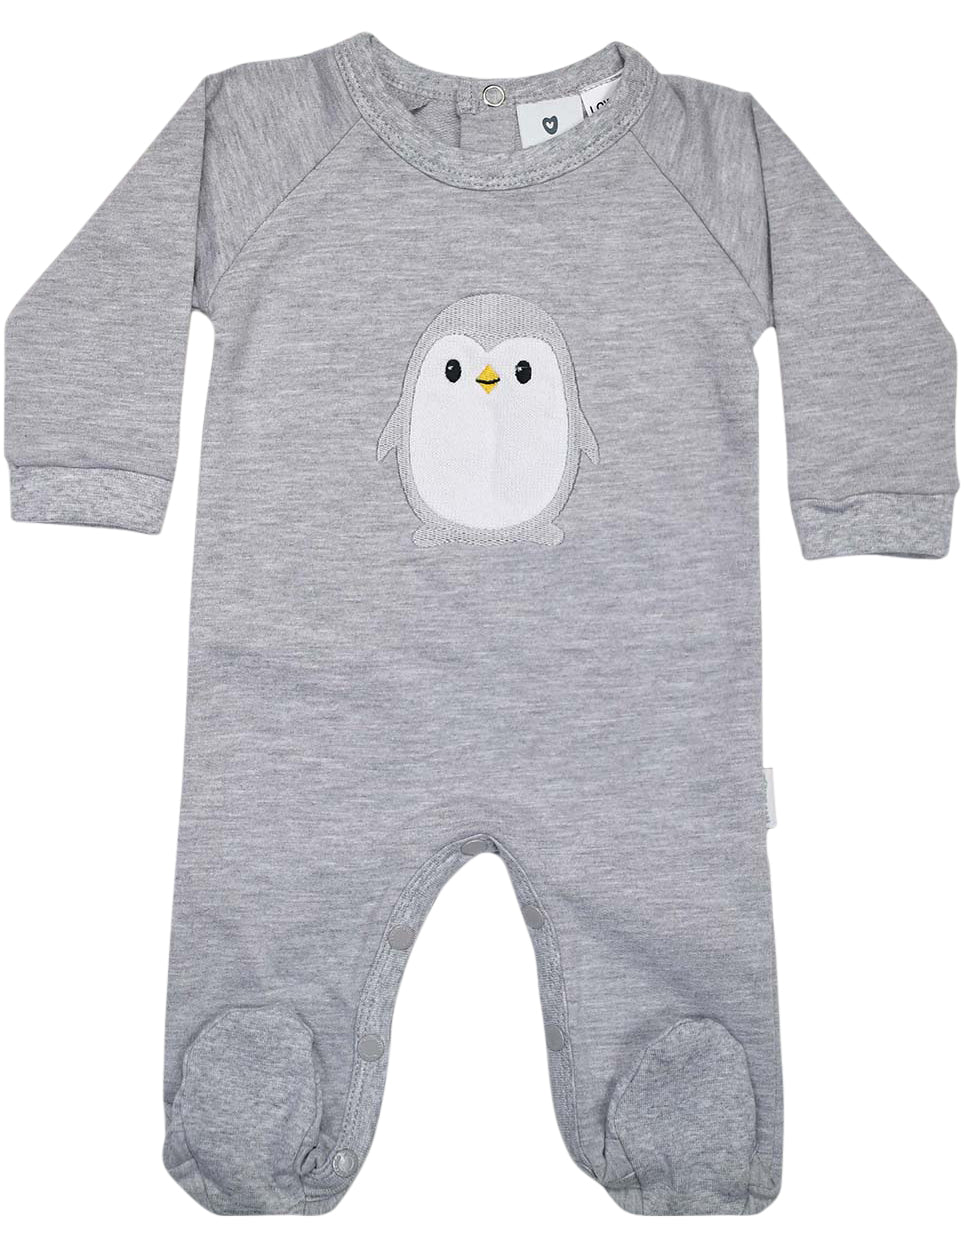 KORANGO Baby Penguin Long Sleeve Romper in Grey Marle